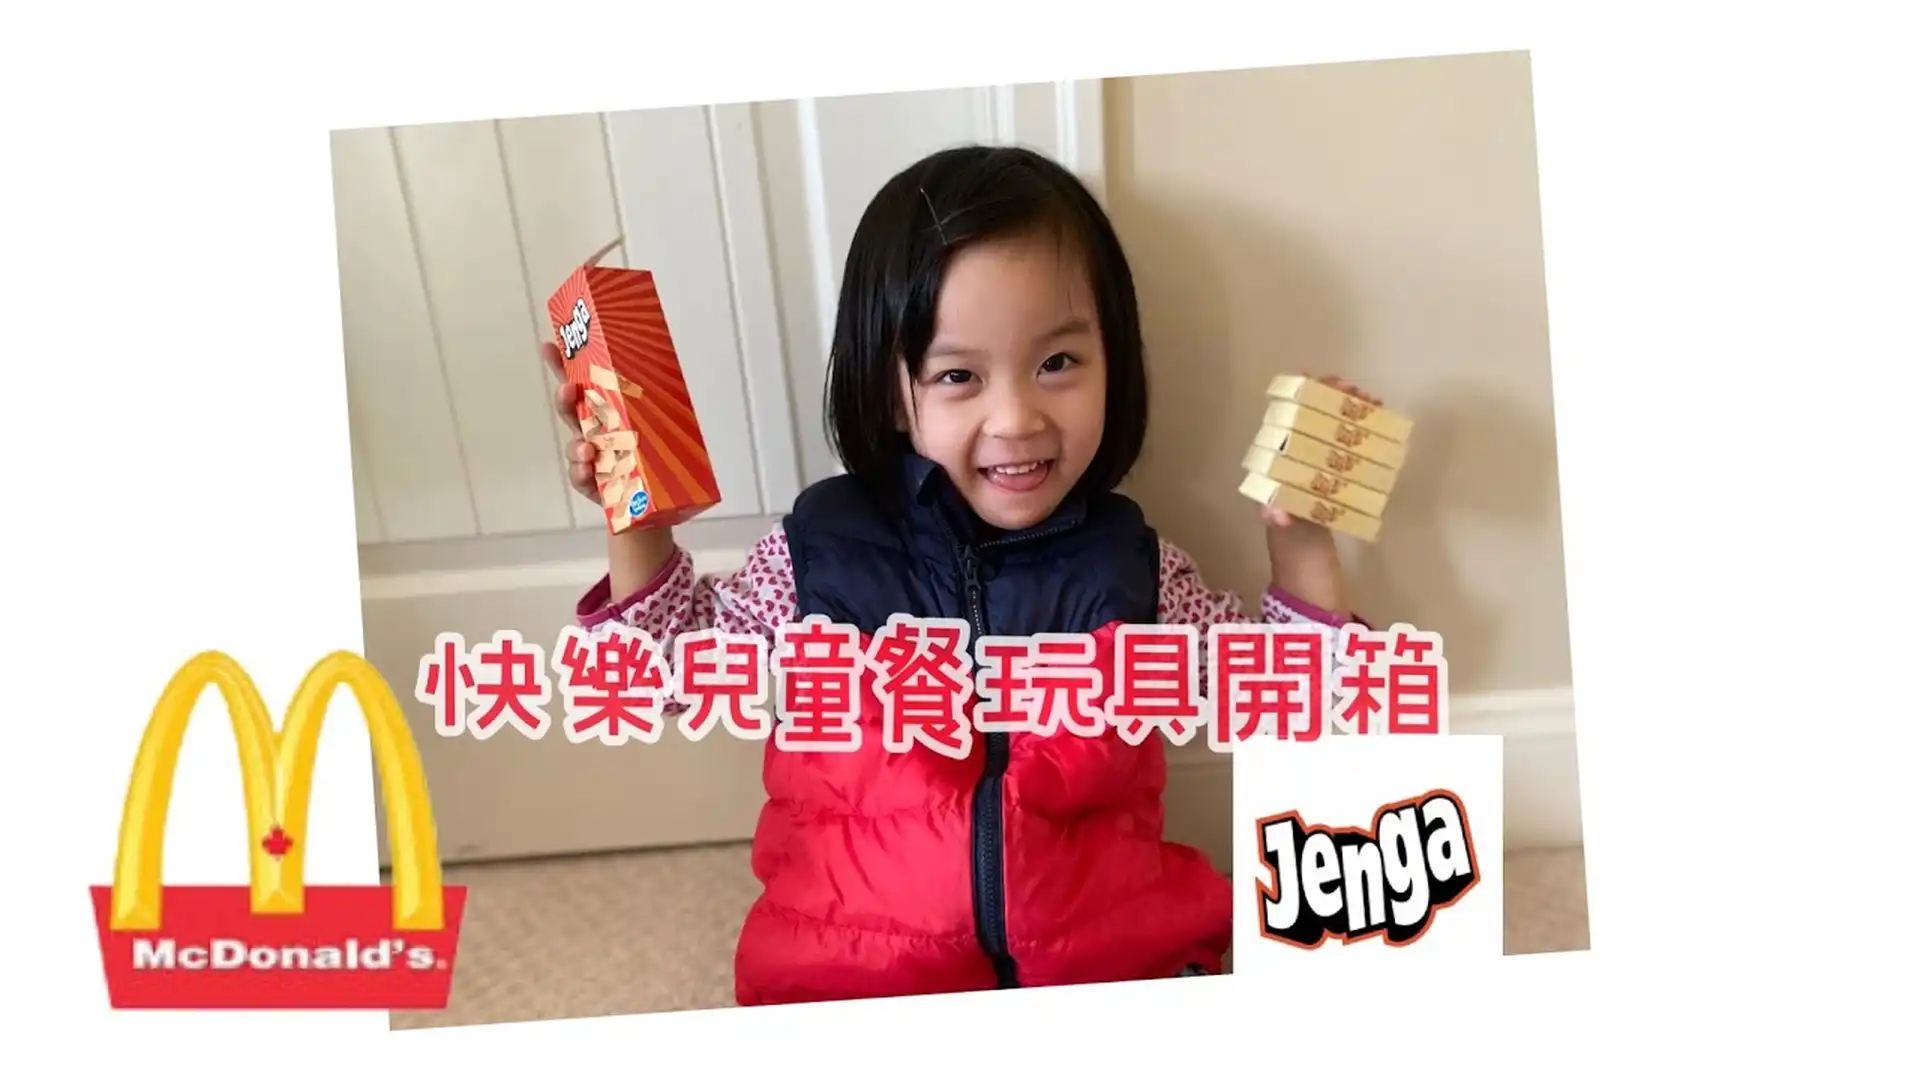 加拿大麥當勞快樂兒童餐玩具開箱 孩之寶 Jenga 玩具 | McDonald’s Hasbro Jenga Game in Happy Meals